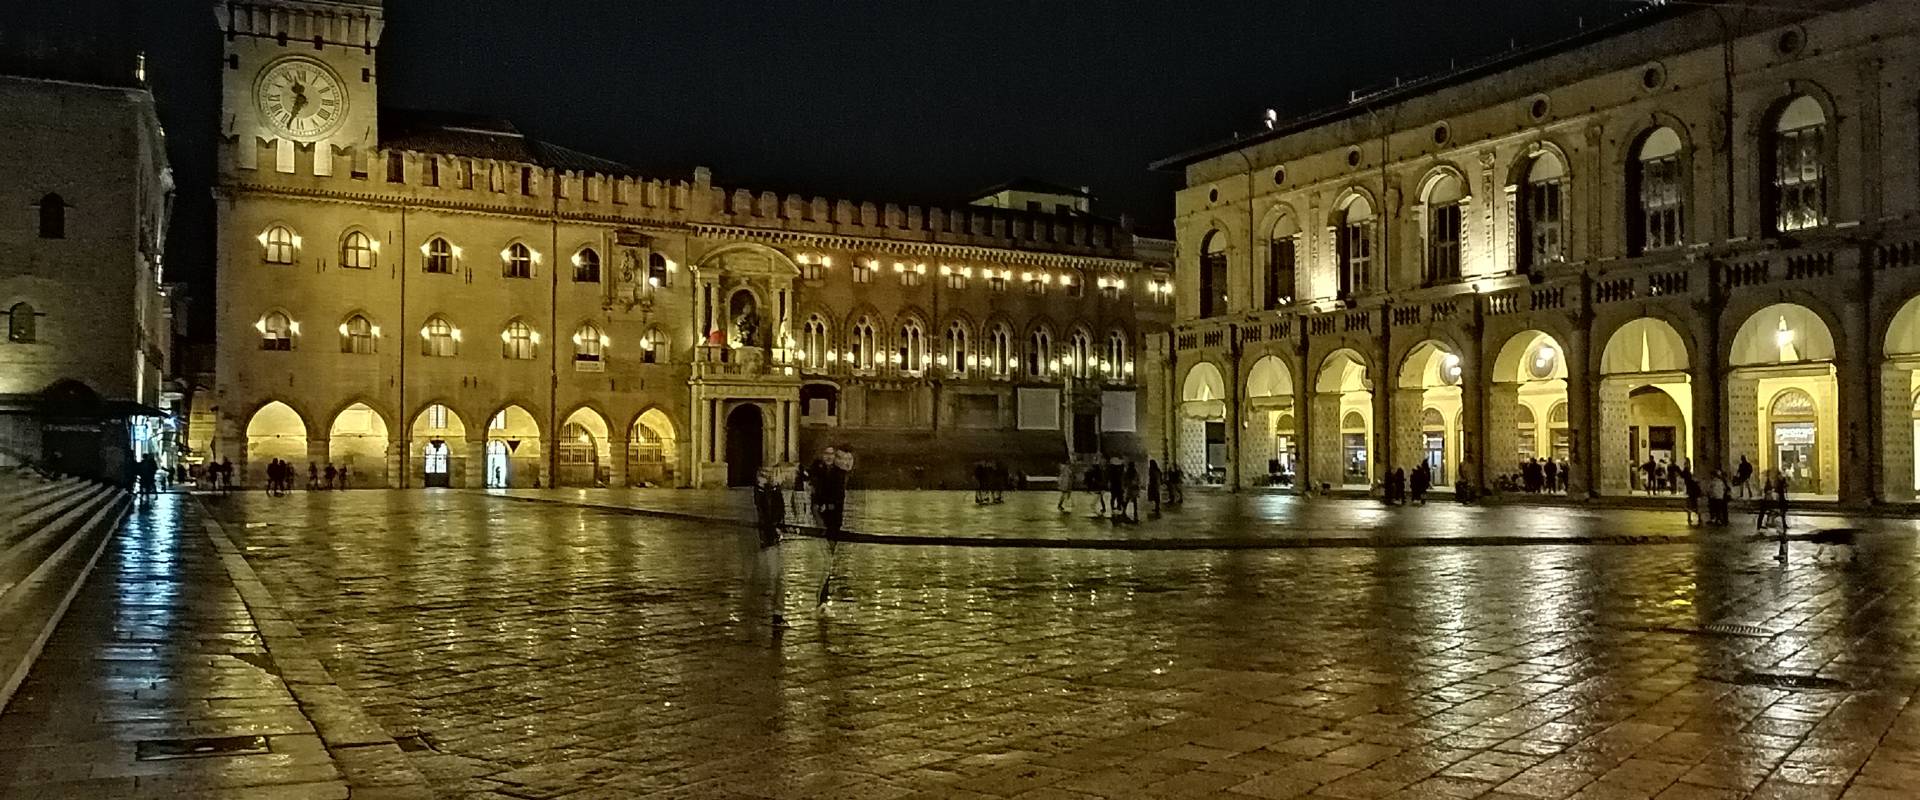 Piazza Maggiore, sera e pioggia foto di Roberta Mattioli